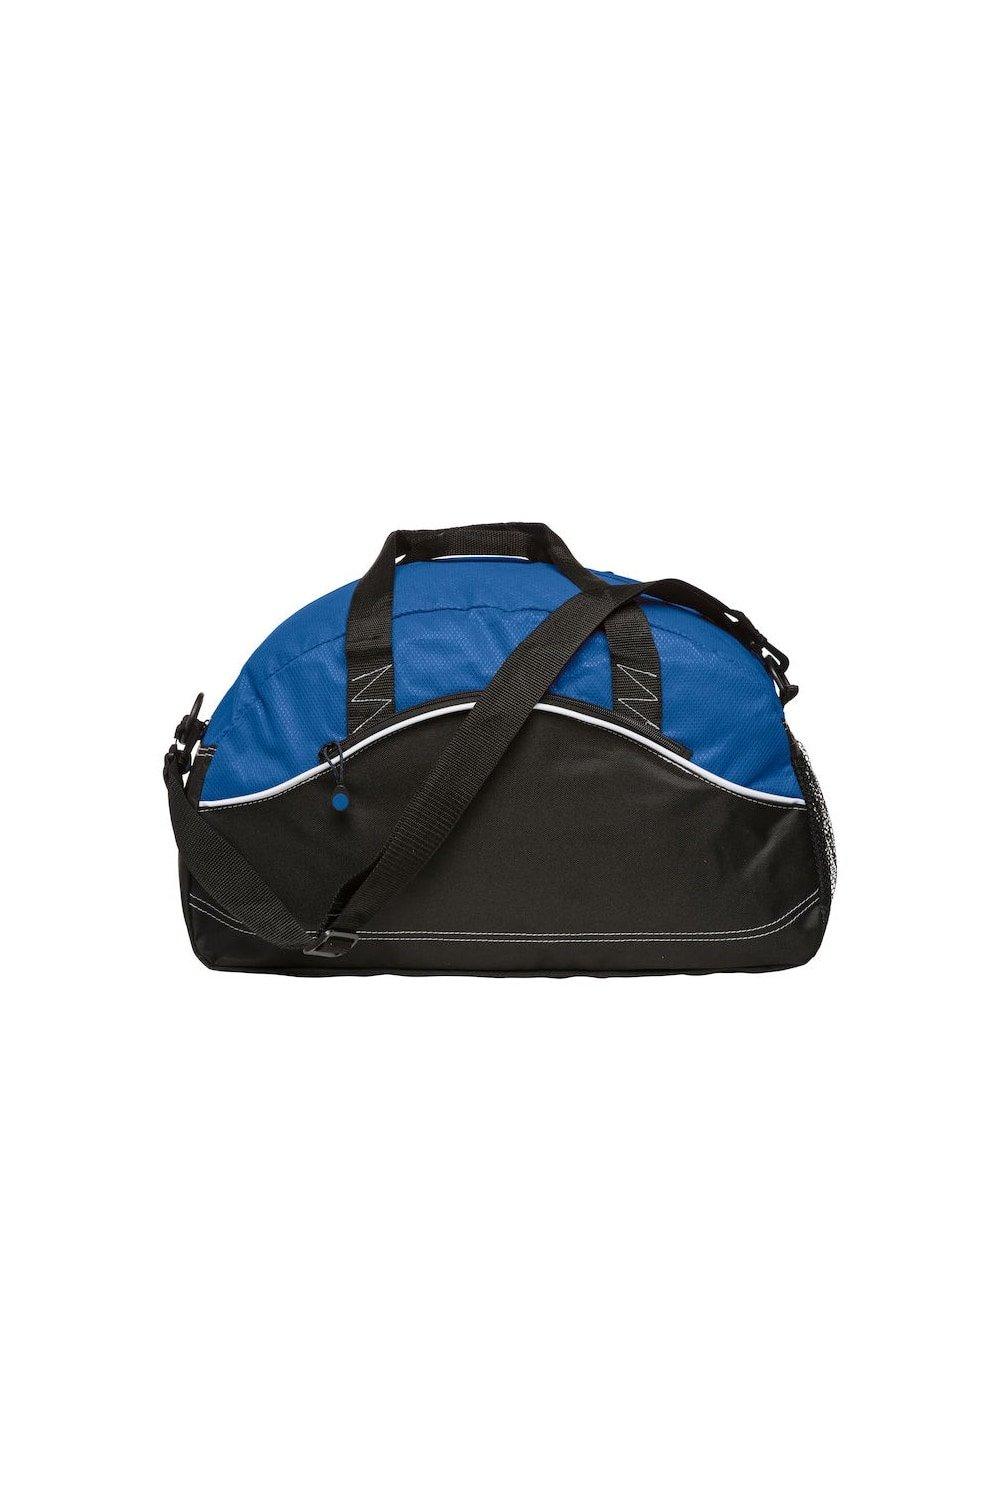 Базовая спортивная сумка Clique, синий базовая спортивная сумка clique синий